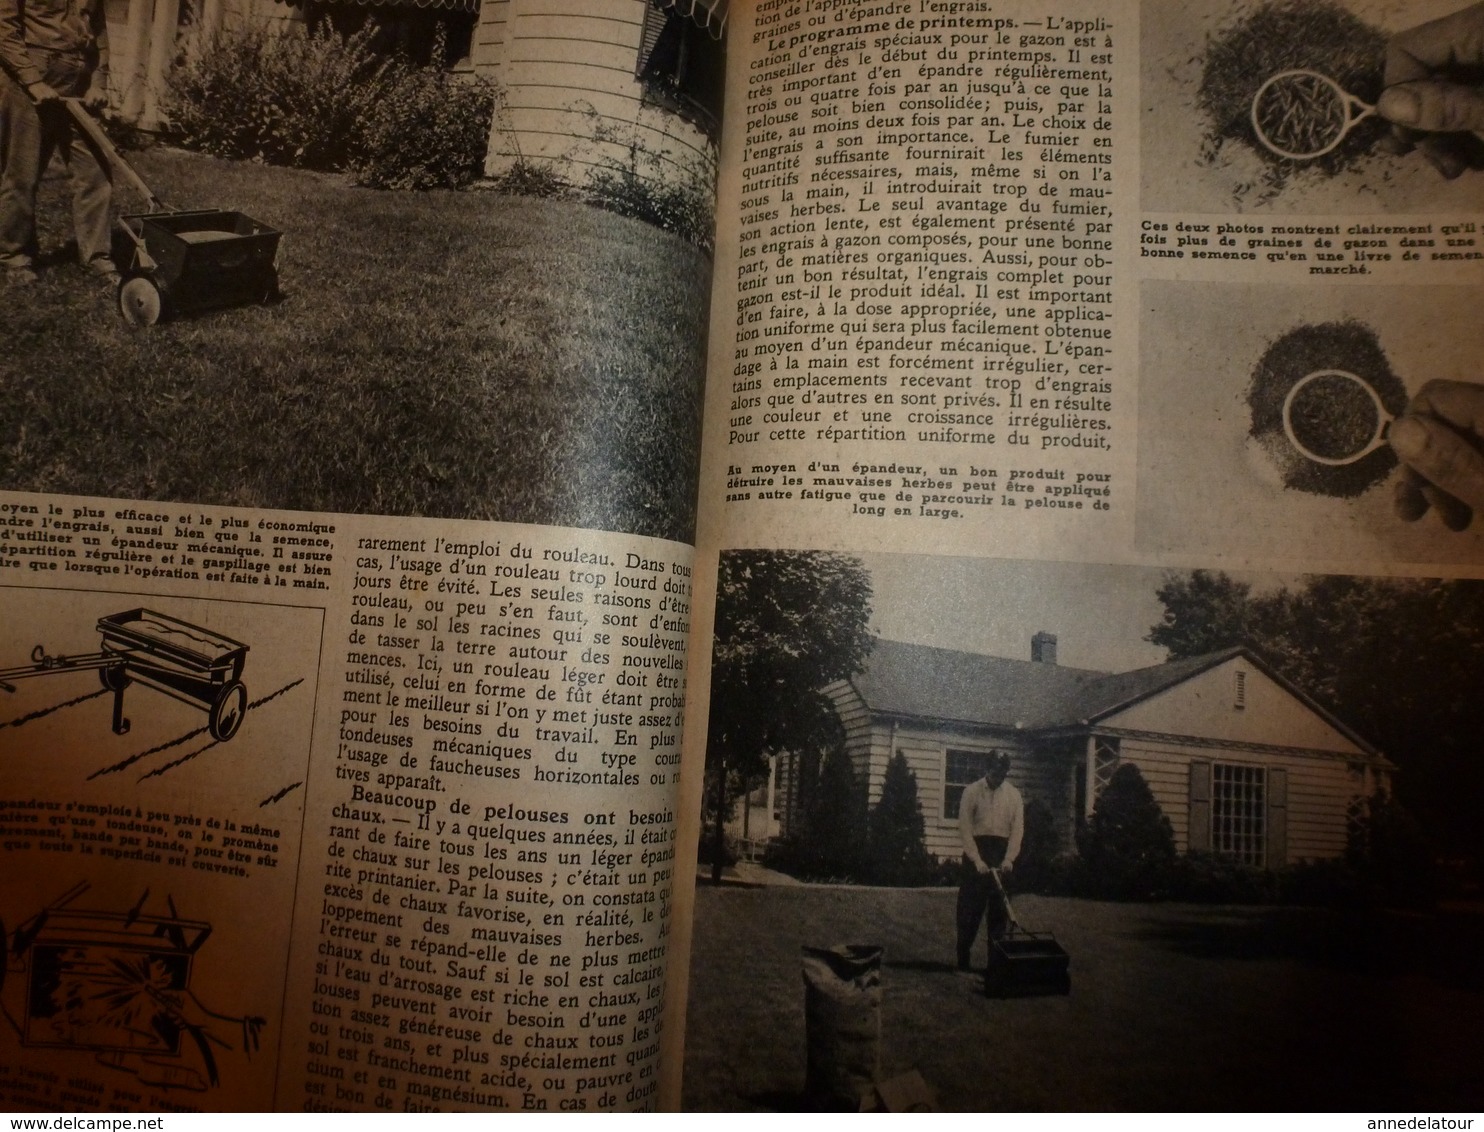 1951 MÉCANIQUE POPULAIRE: Construire sa maison en contre-plaqué (2e partie);Pour avoir une belle pelouse;Rejointoyer;etc